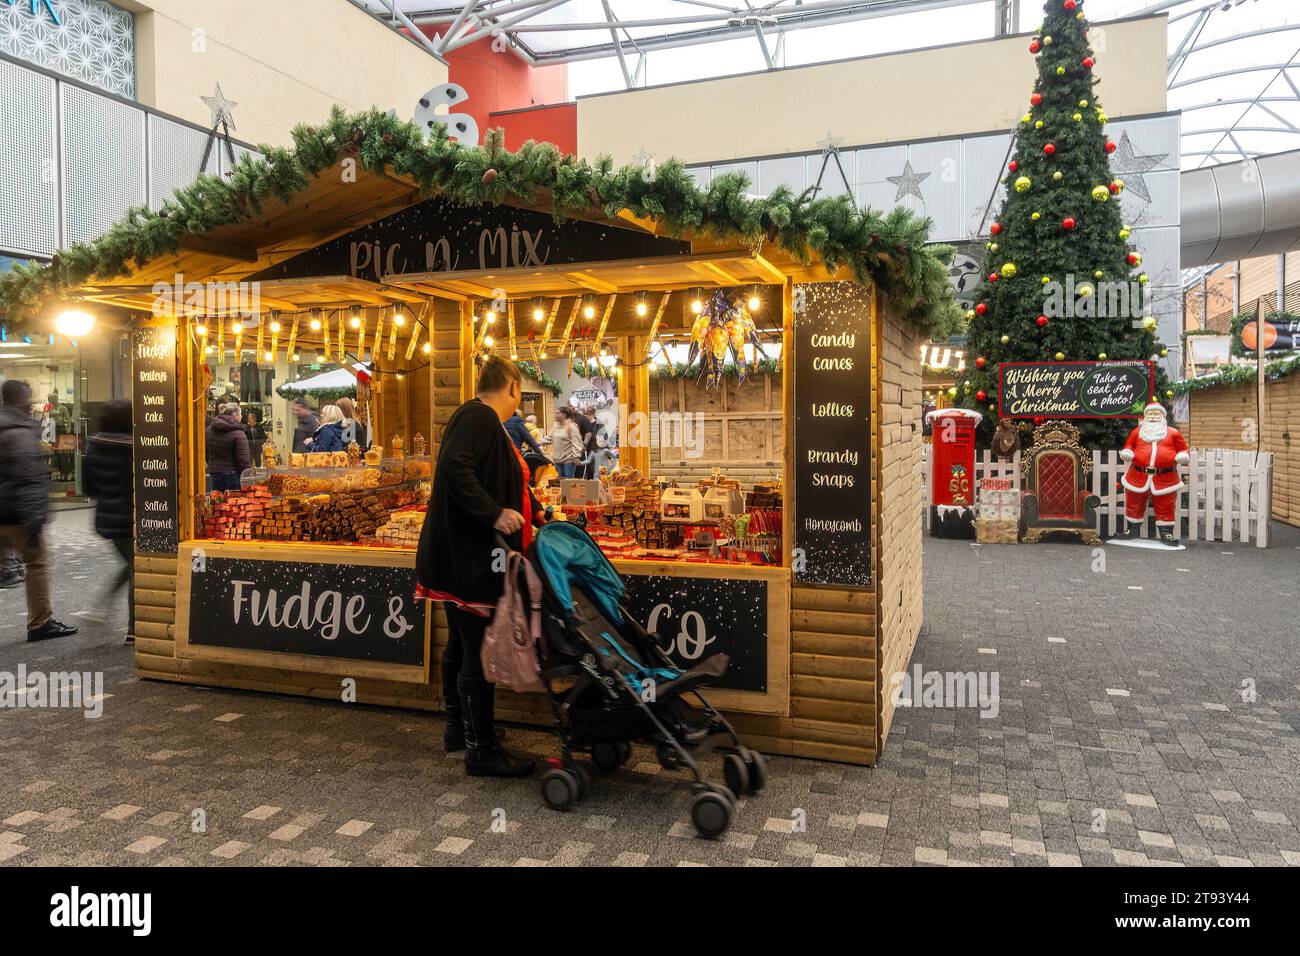 Centro commerciale Festival Place at Christmas, centro di Basingstoke, Hampshire, Inghilterra, Regno Unito. Bancarelle del mercatino di Natale e albero di Natale decorato Foto Stock